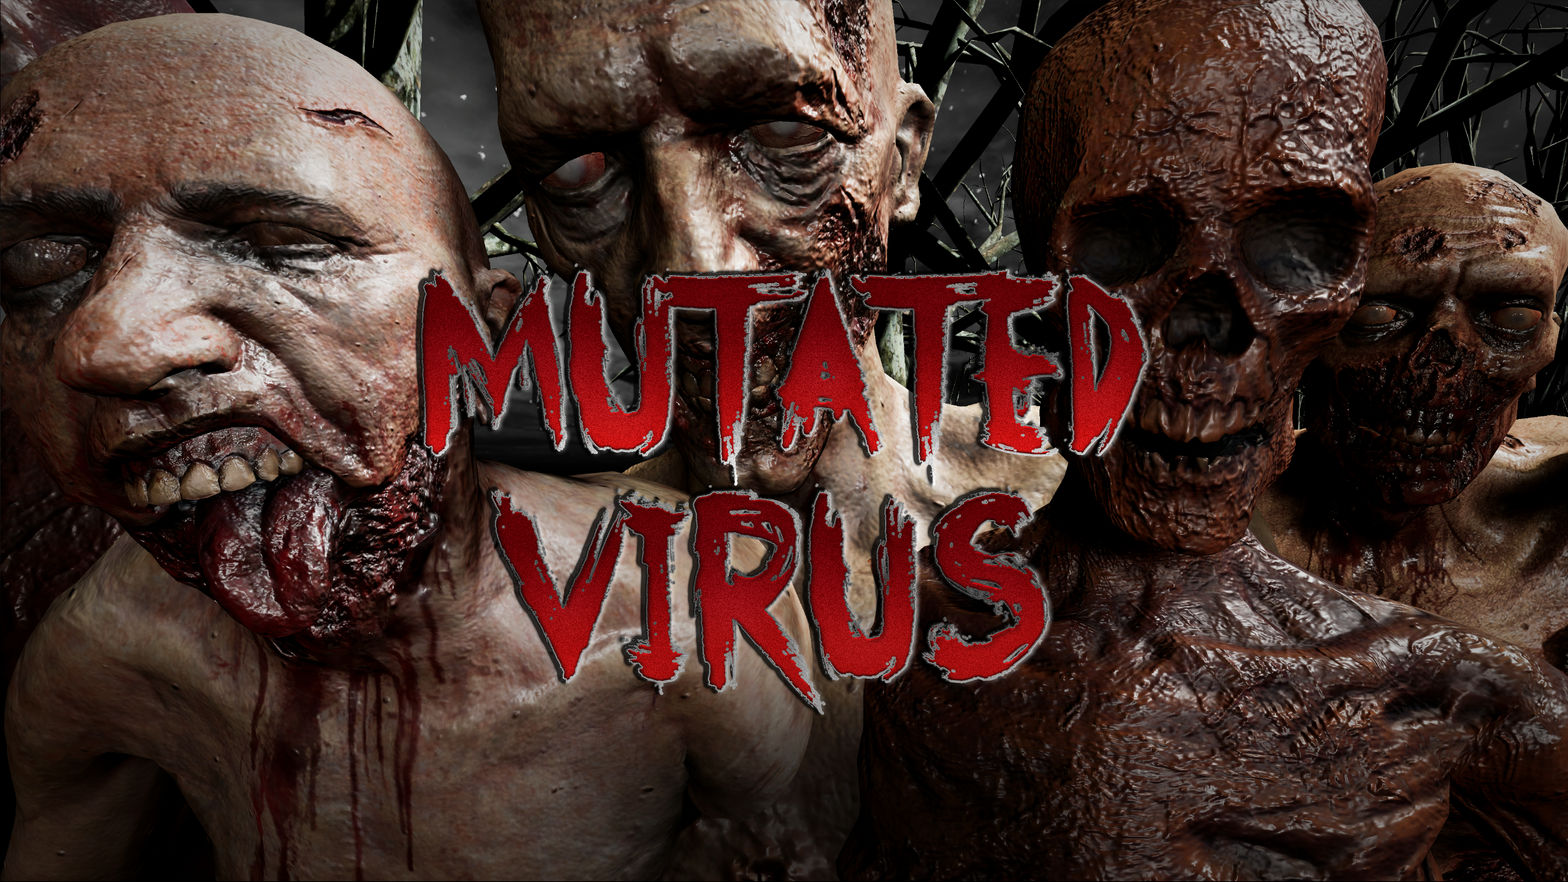 Mutated Virus